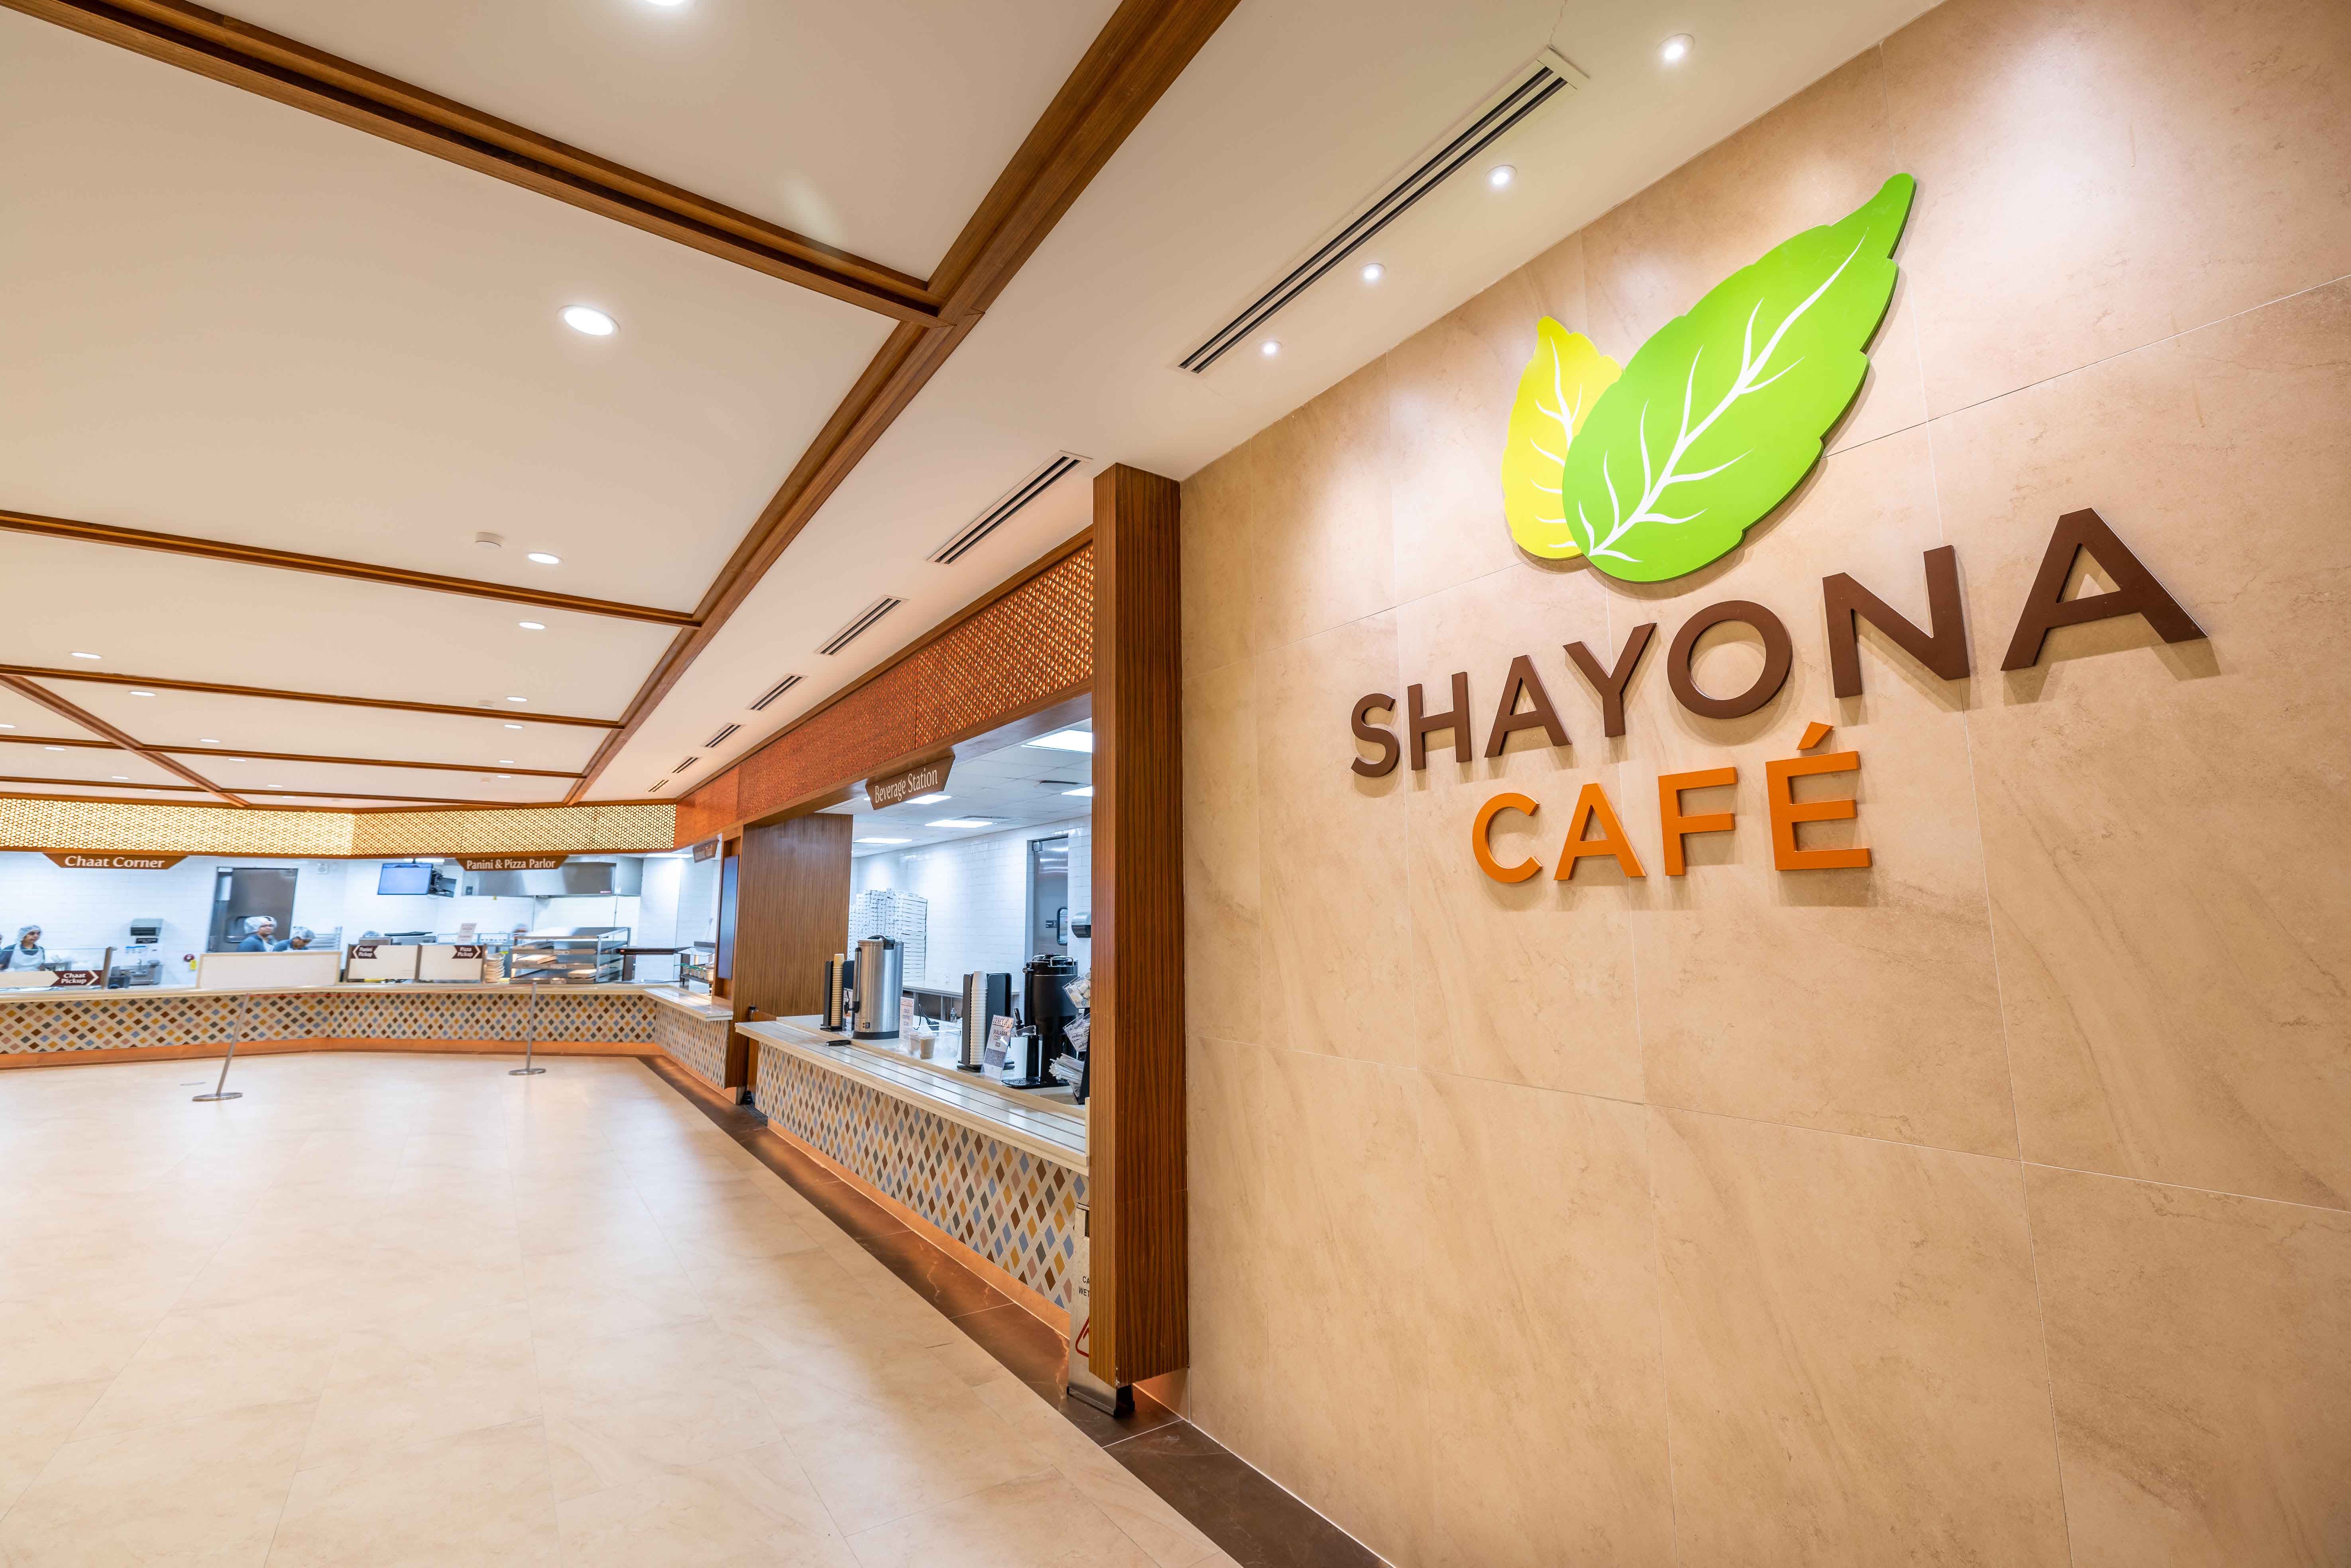 Shayona cafe